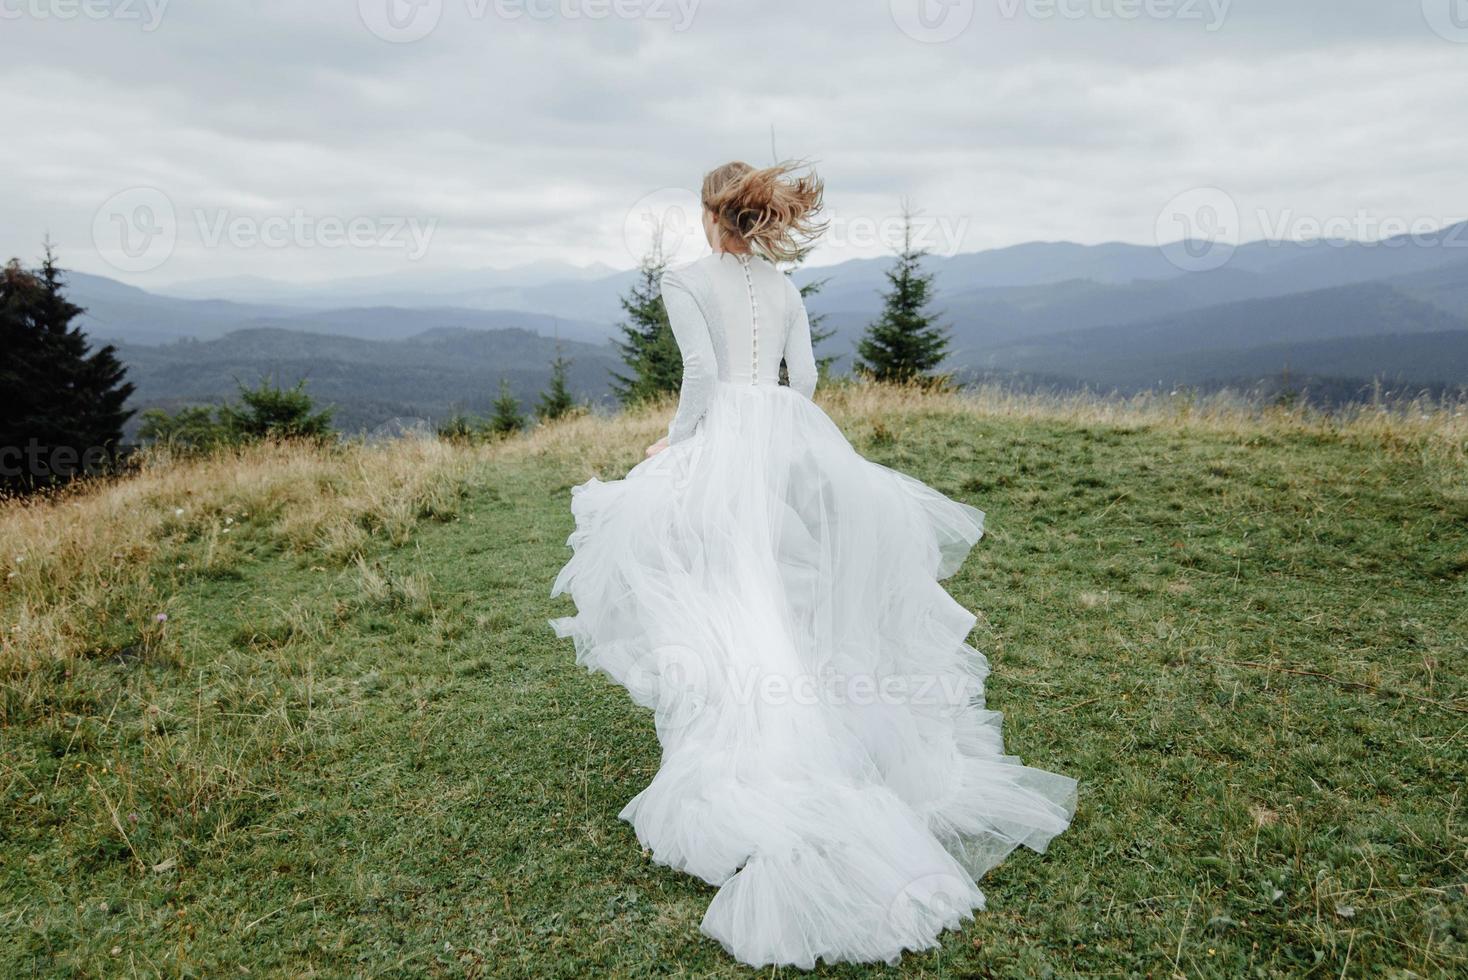 ensaio fotográfico da noiva nas montanhas. foto de casamento estilo boho.